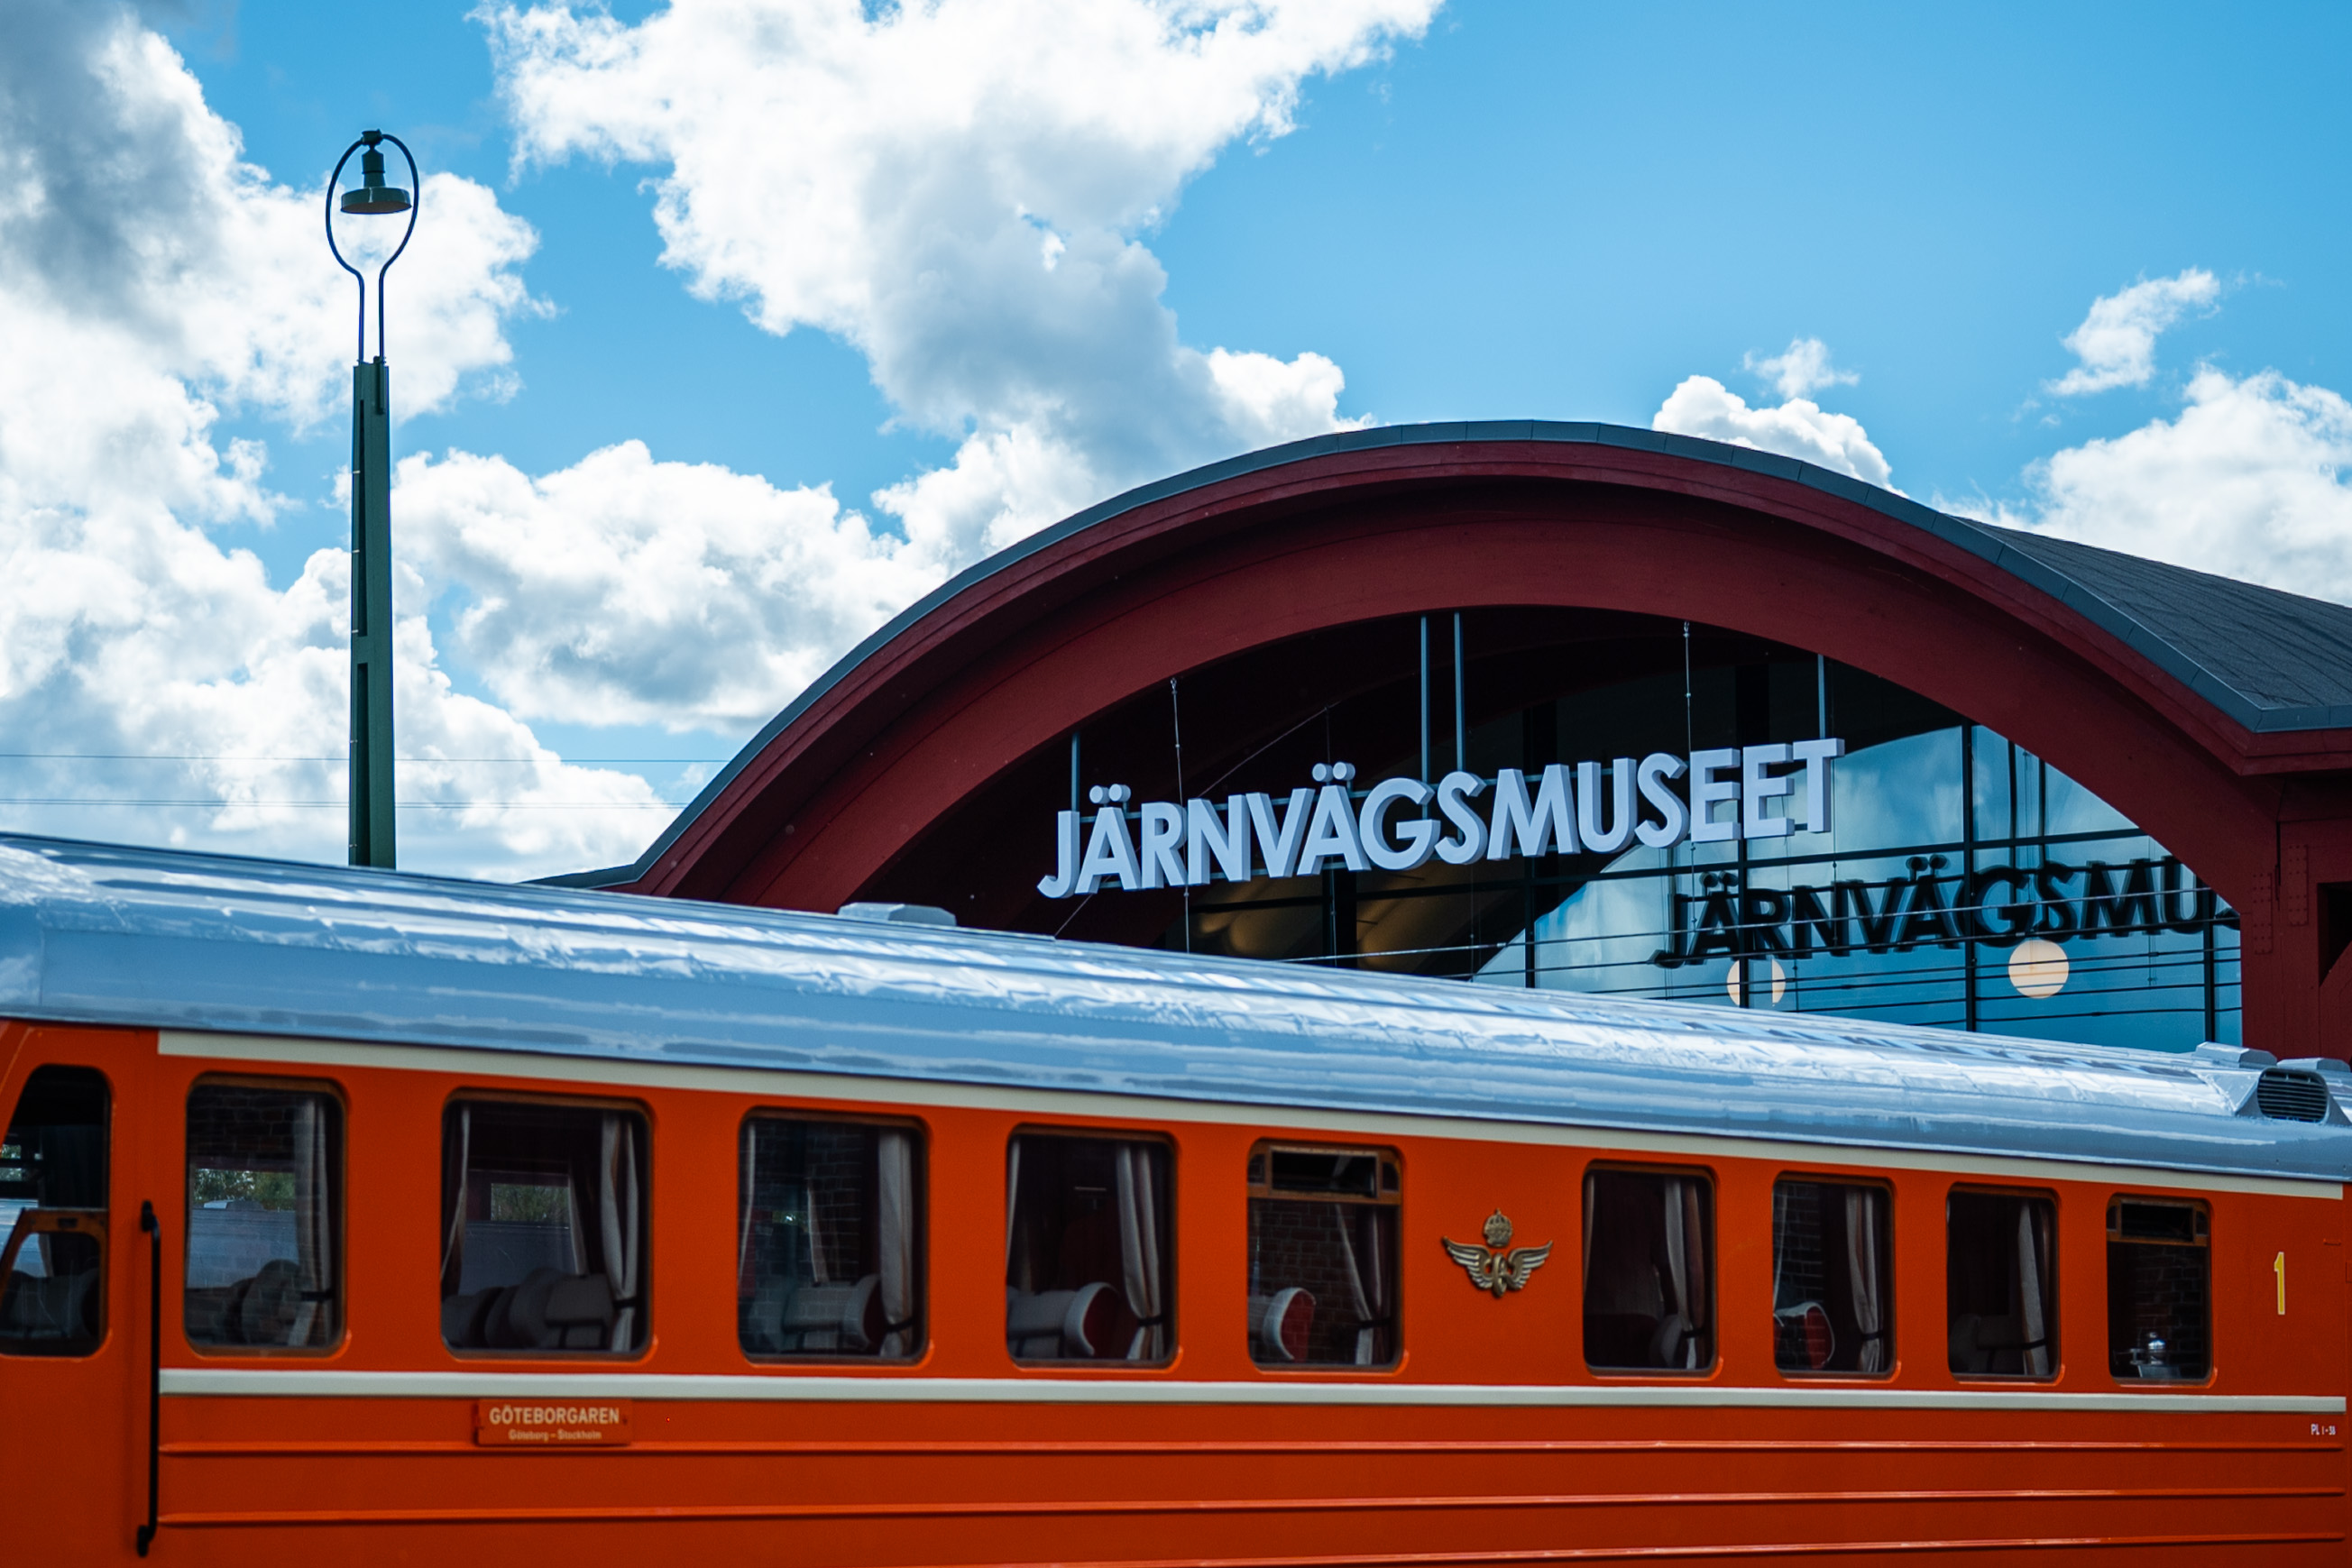 en del av entrén till museet där en orange tågvagn syns